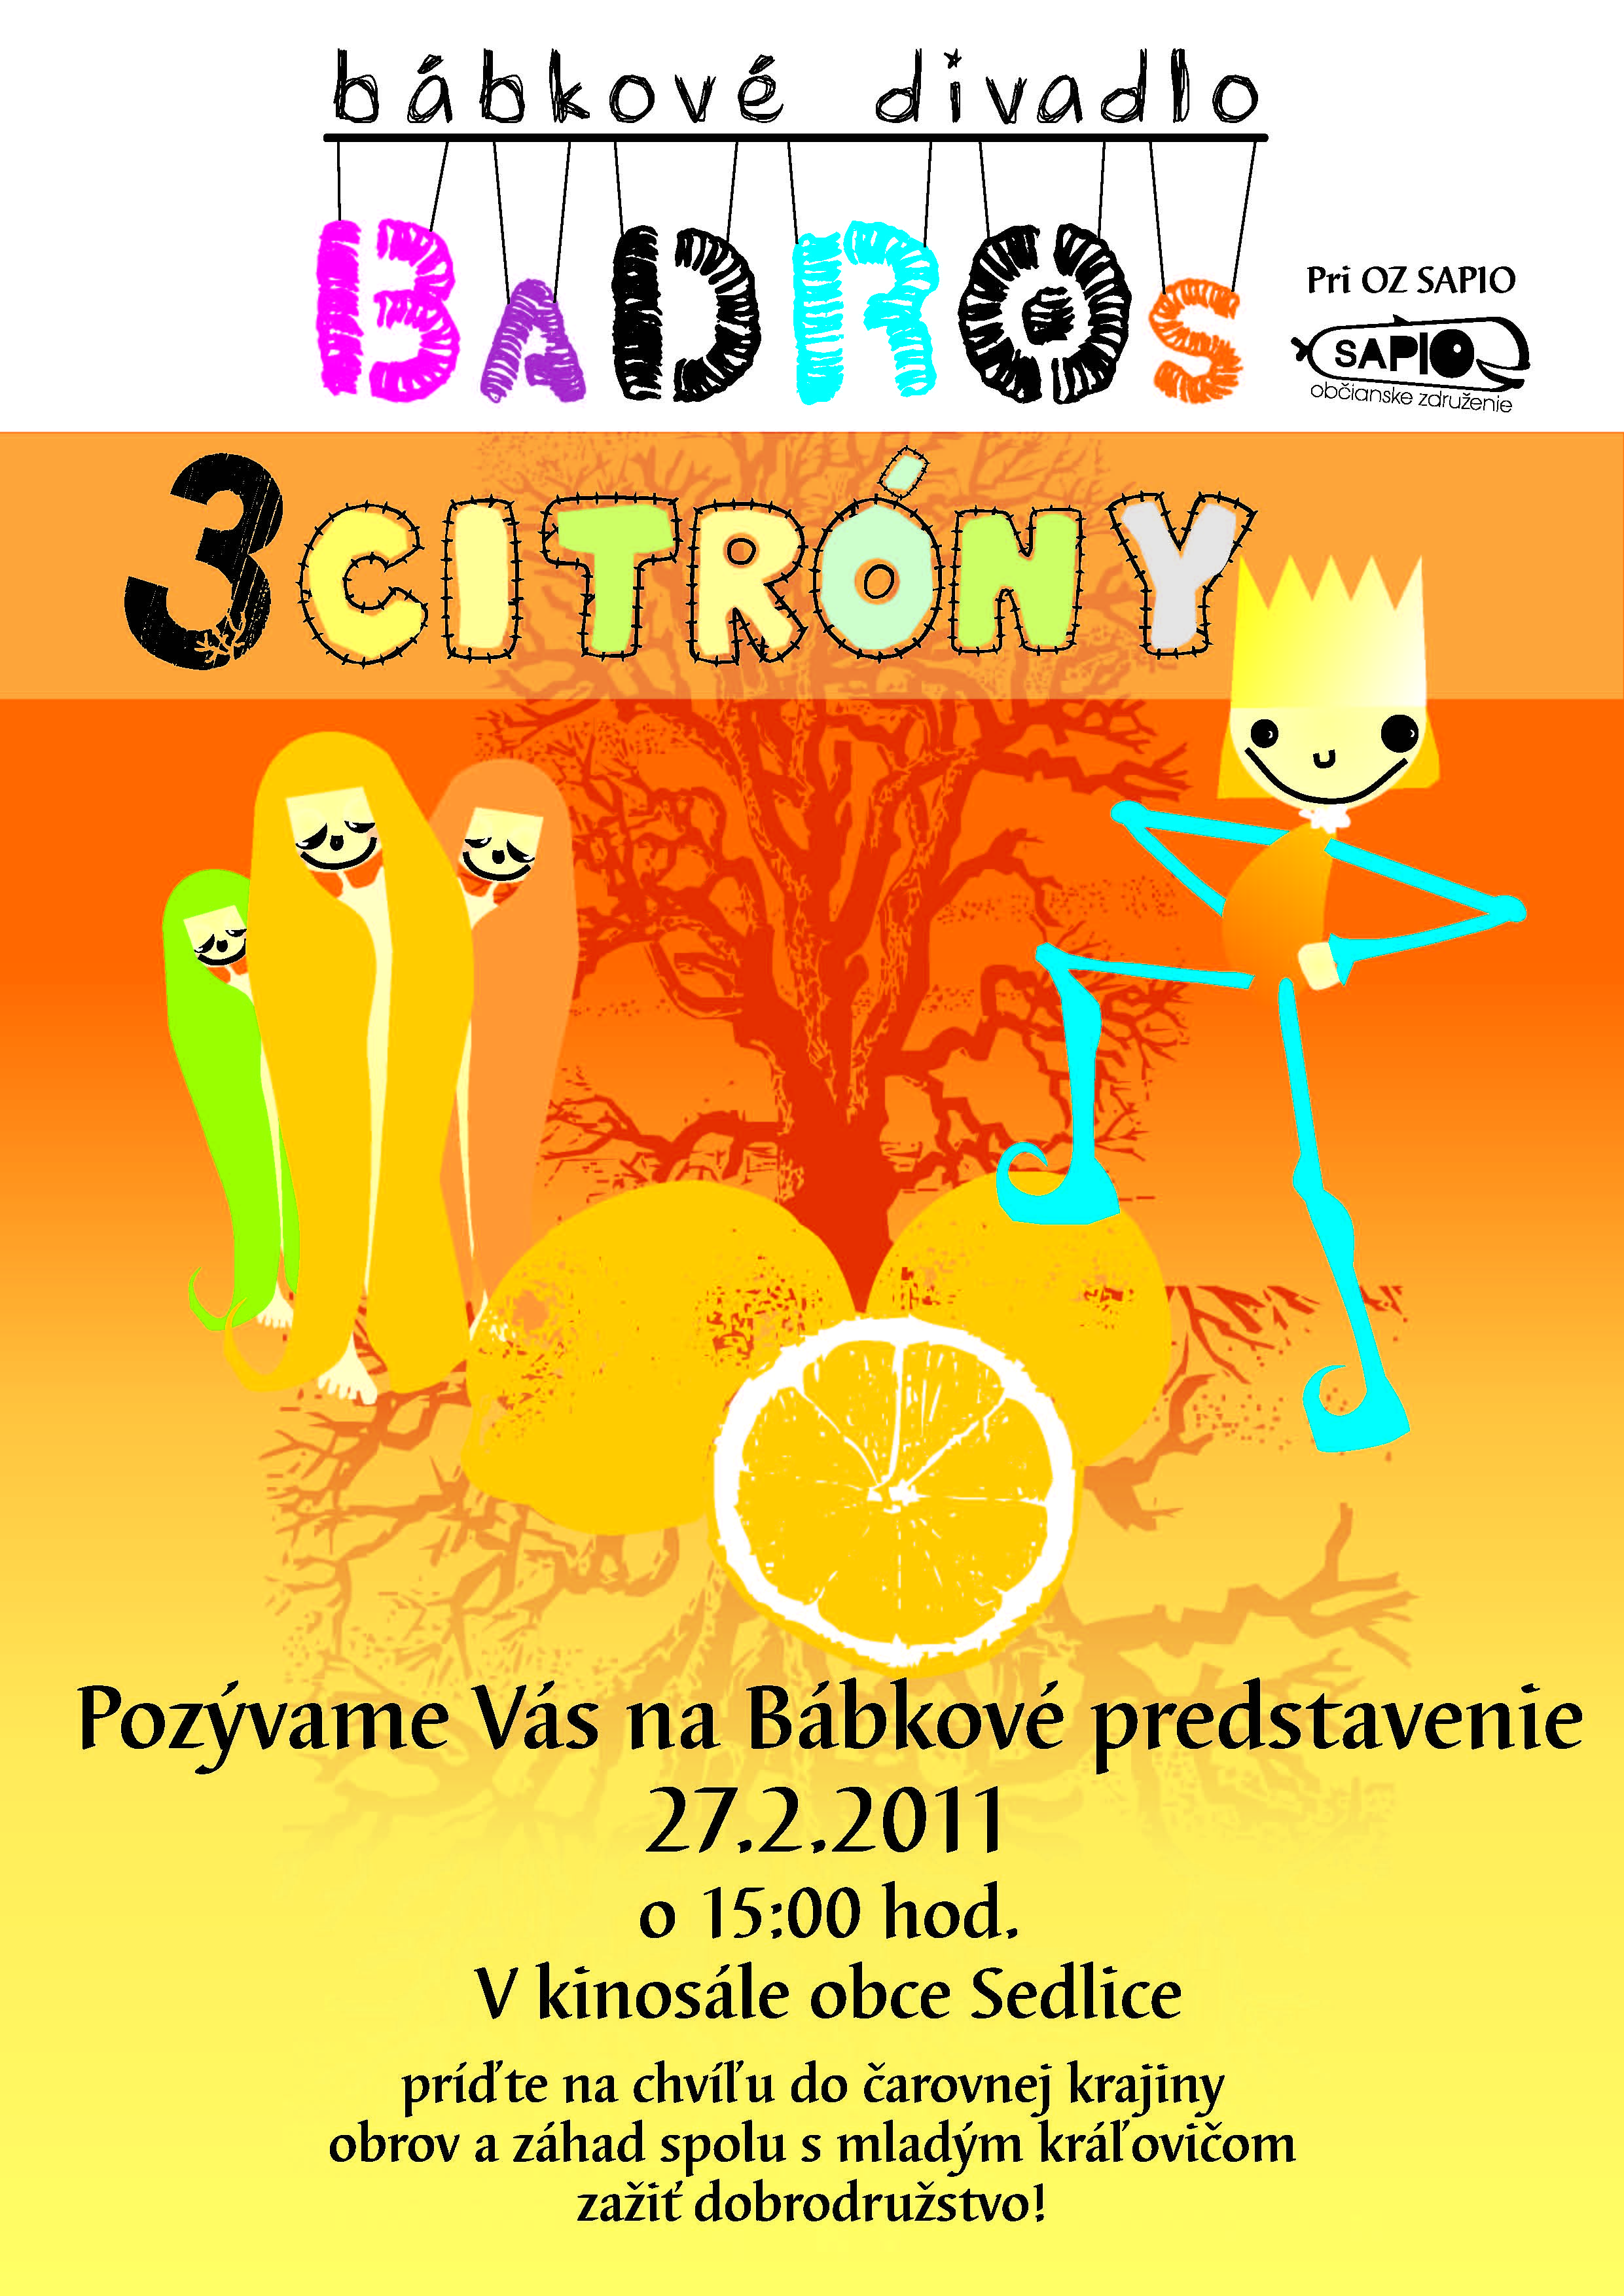 Dokumenty - plagat 3 citrony_2011 Sedlice.jpg